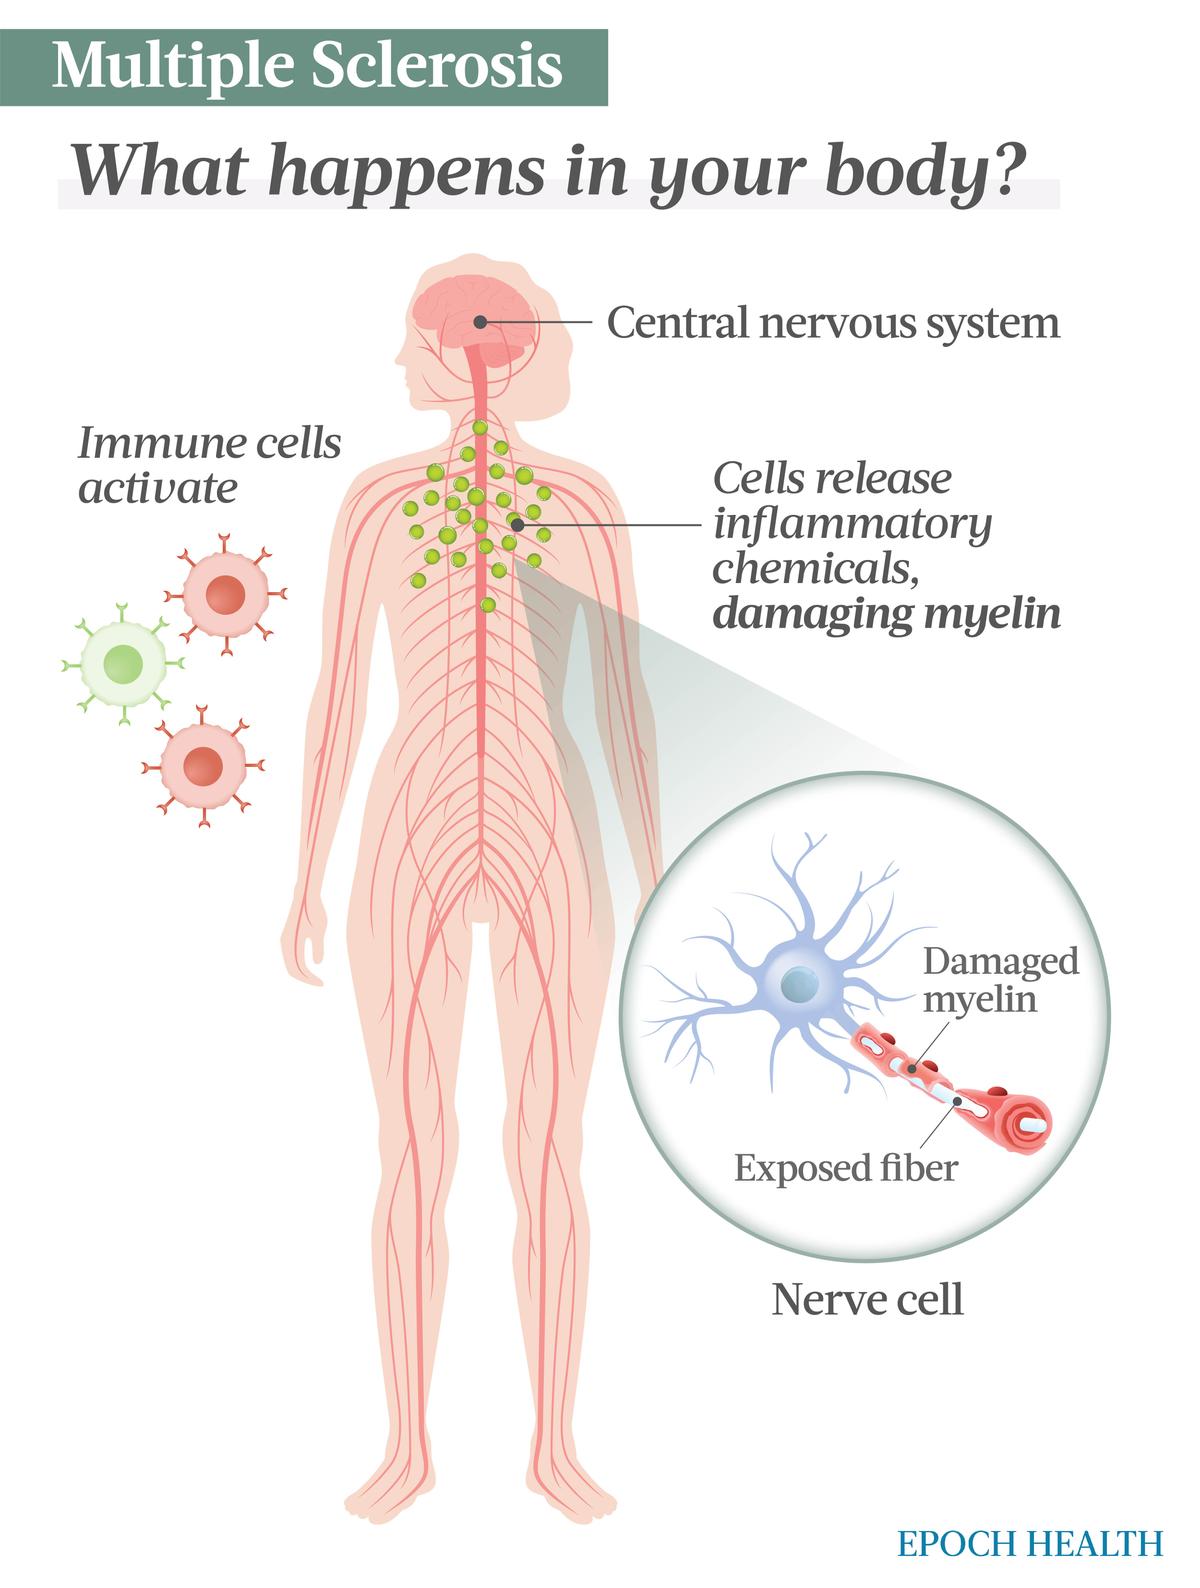 Nella SM, una risposta autoimmune attiva le cellule immunitarie come le cellule T e B, che poi rilasciano citochine infiammatorie che danneggiano la mielina, la guaina protettiva che riveste le fibre delle cellule nervose.  Ciò interrompe la comunicazione tra i nervi.  (Illustrazioni di The Epoch Times, Shutterstock)